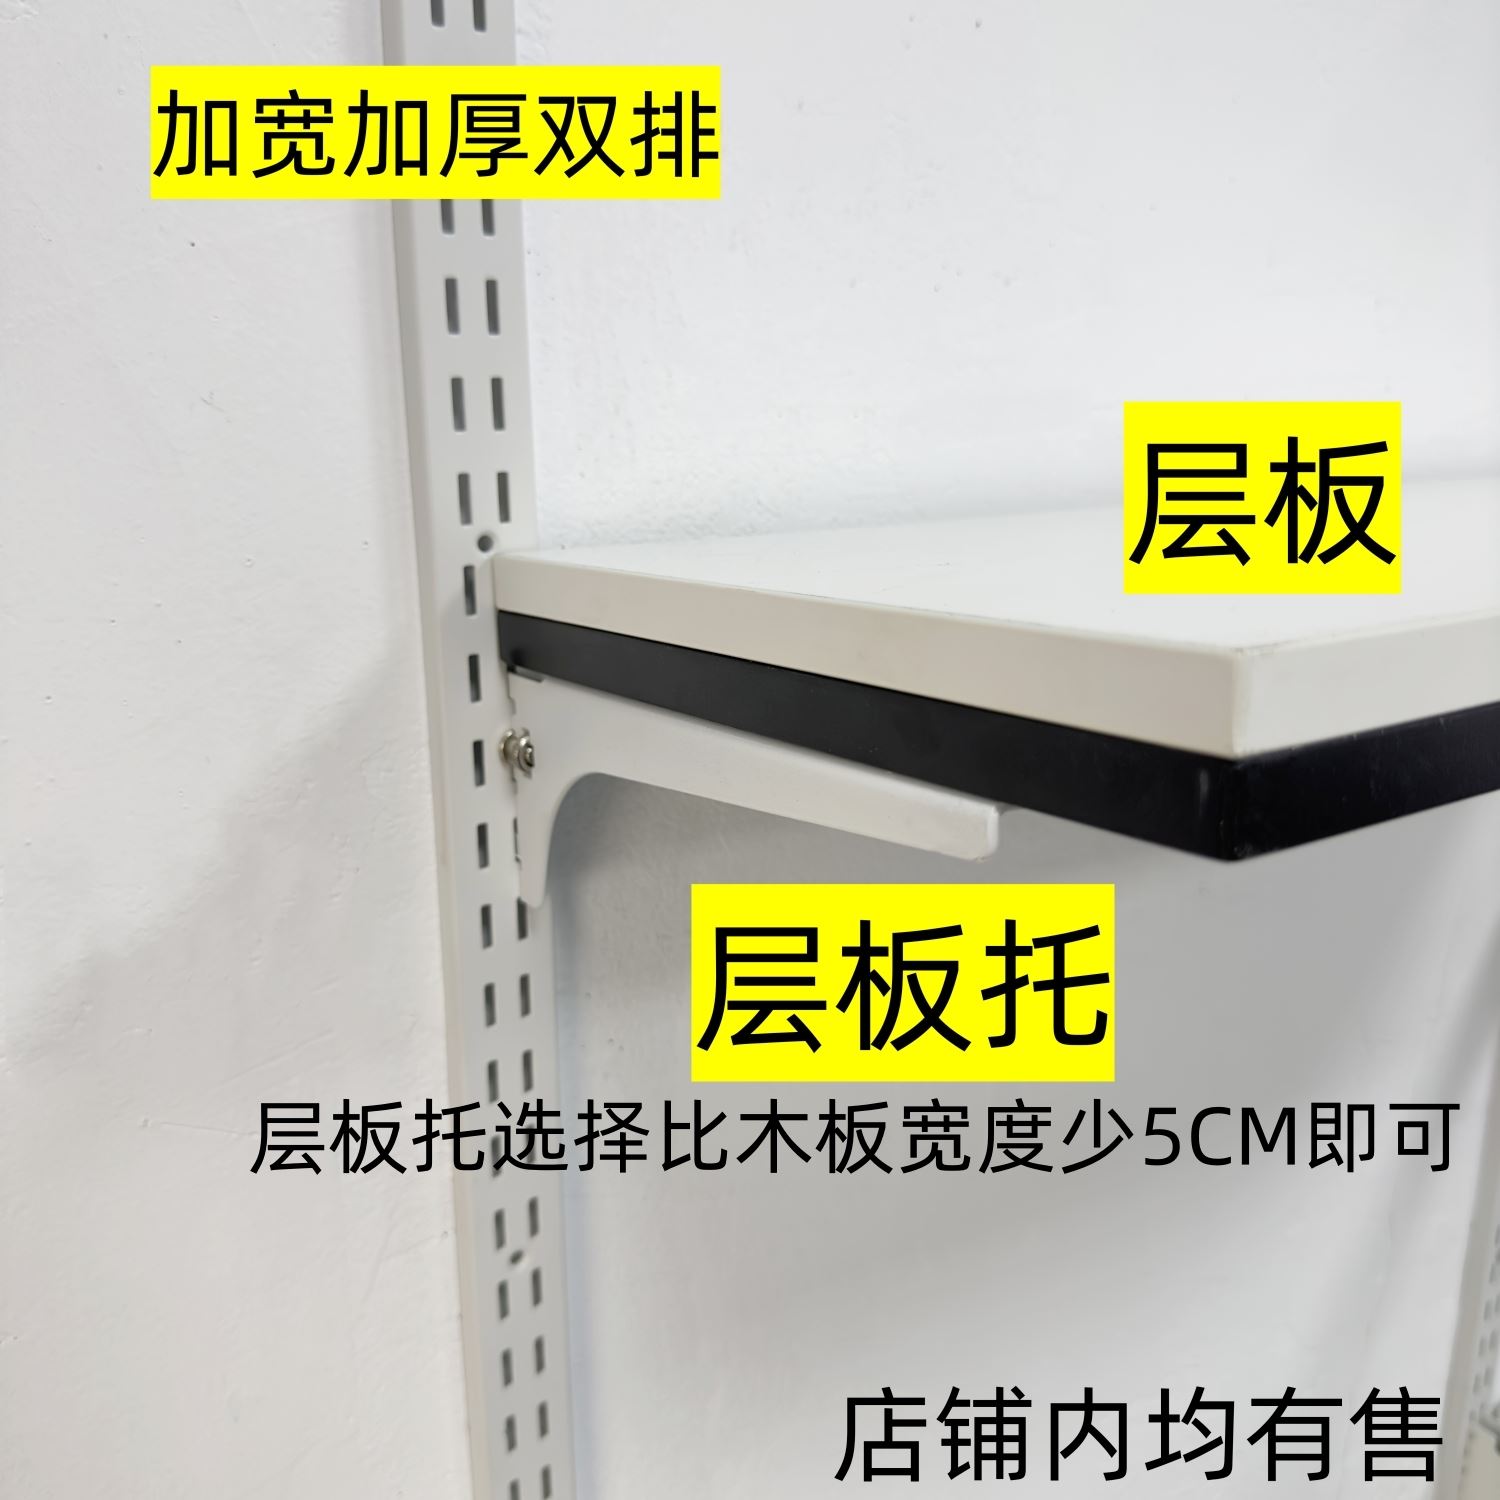 置物架木板 【益佳】AA柱层板托配件高纤维密度板 金属衣柜置衣板 - 图1